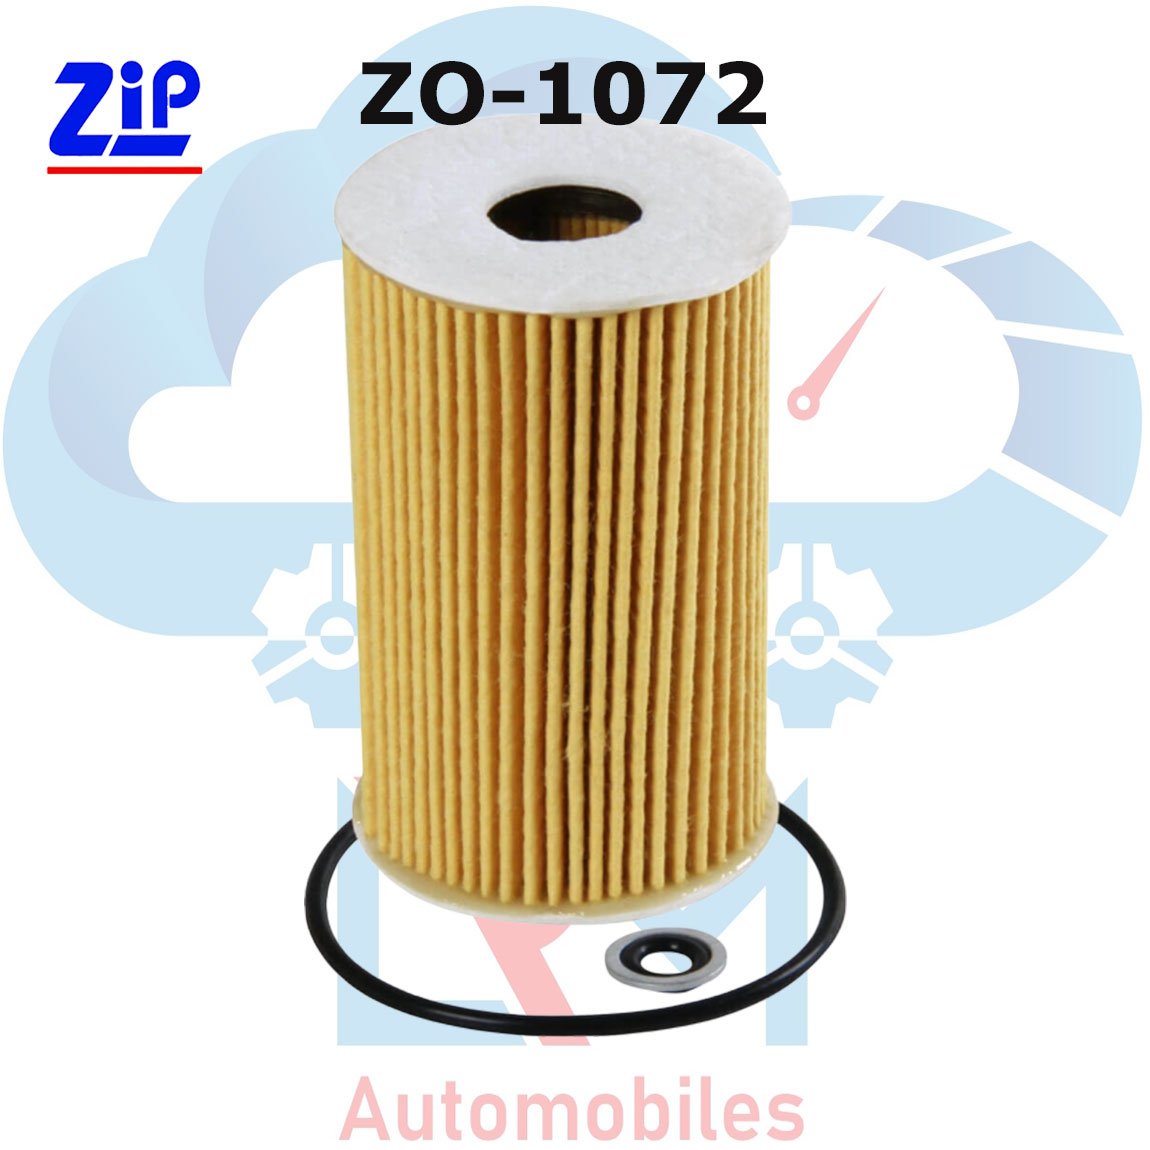 Oil Filter For Hyundai Alcazar in Zip Filter